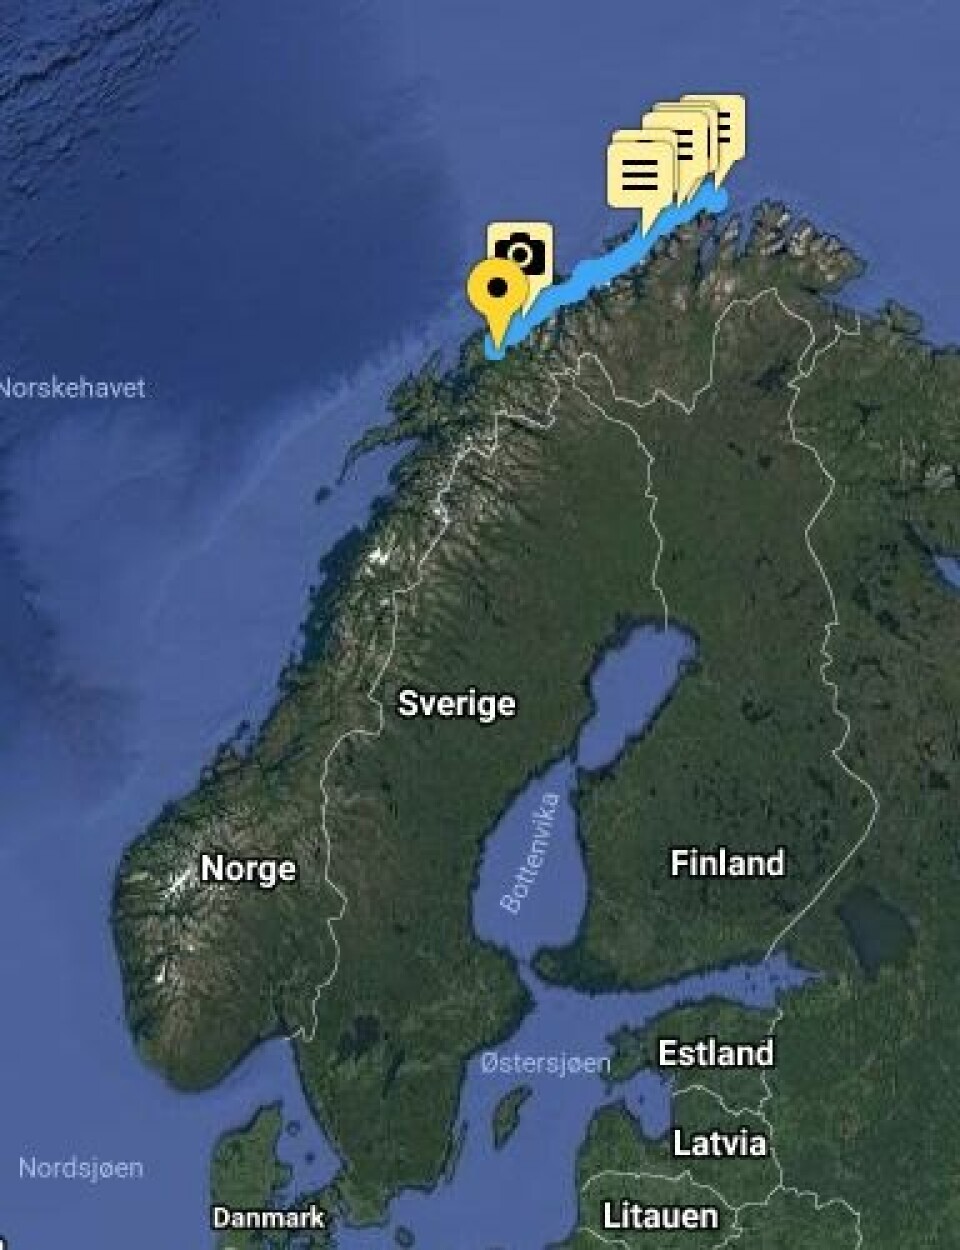 PROGRESJON: Klann har nå seilt mer en 1/4 til Lindesnes,men er fortsatt i Troms.